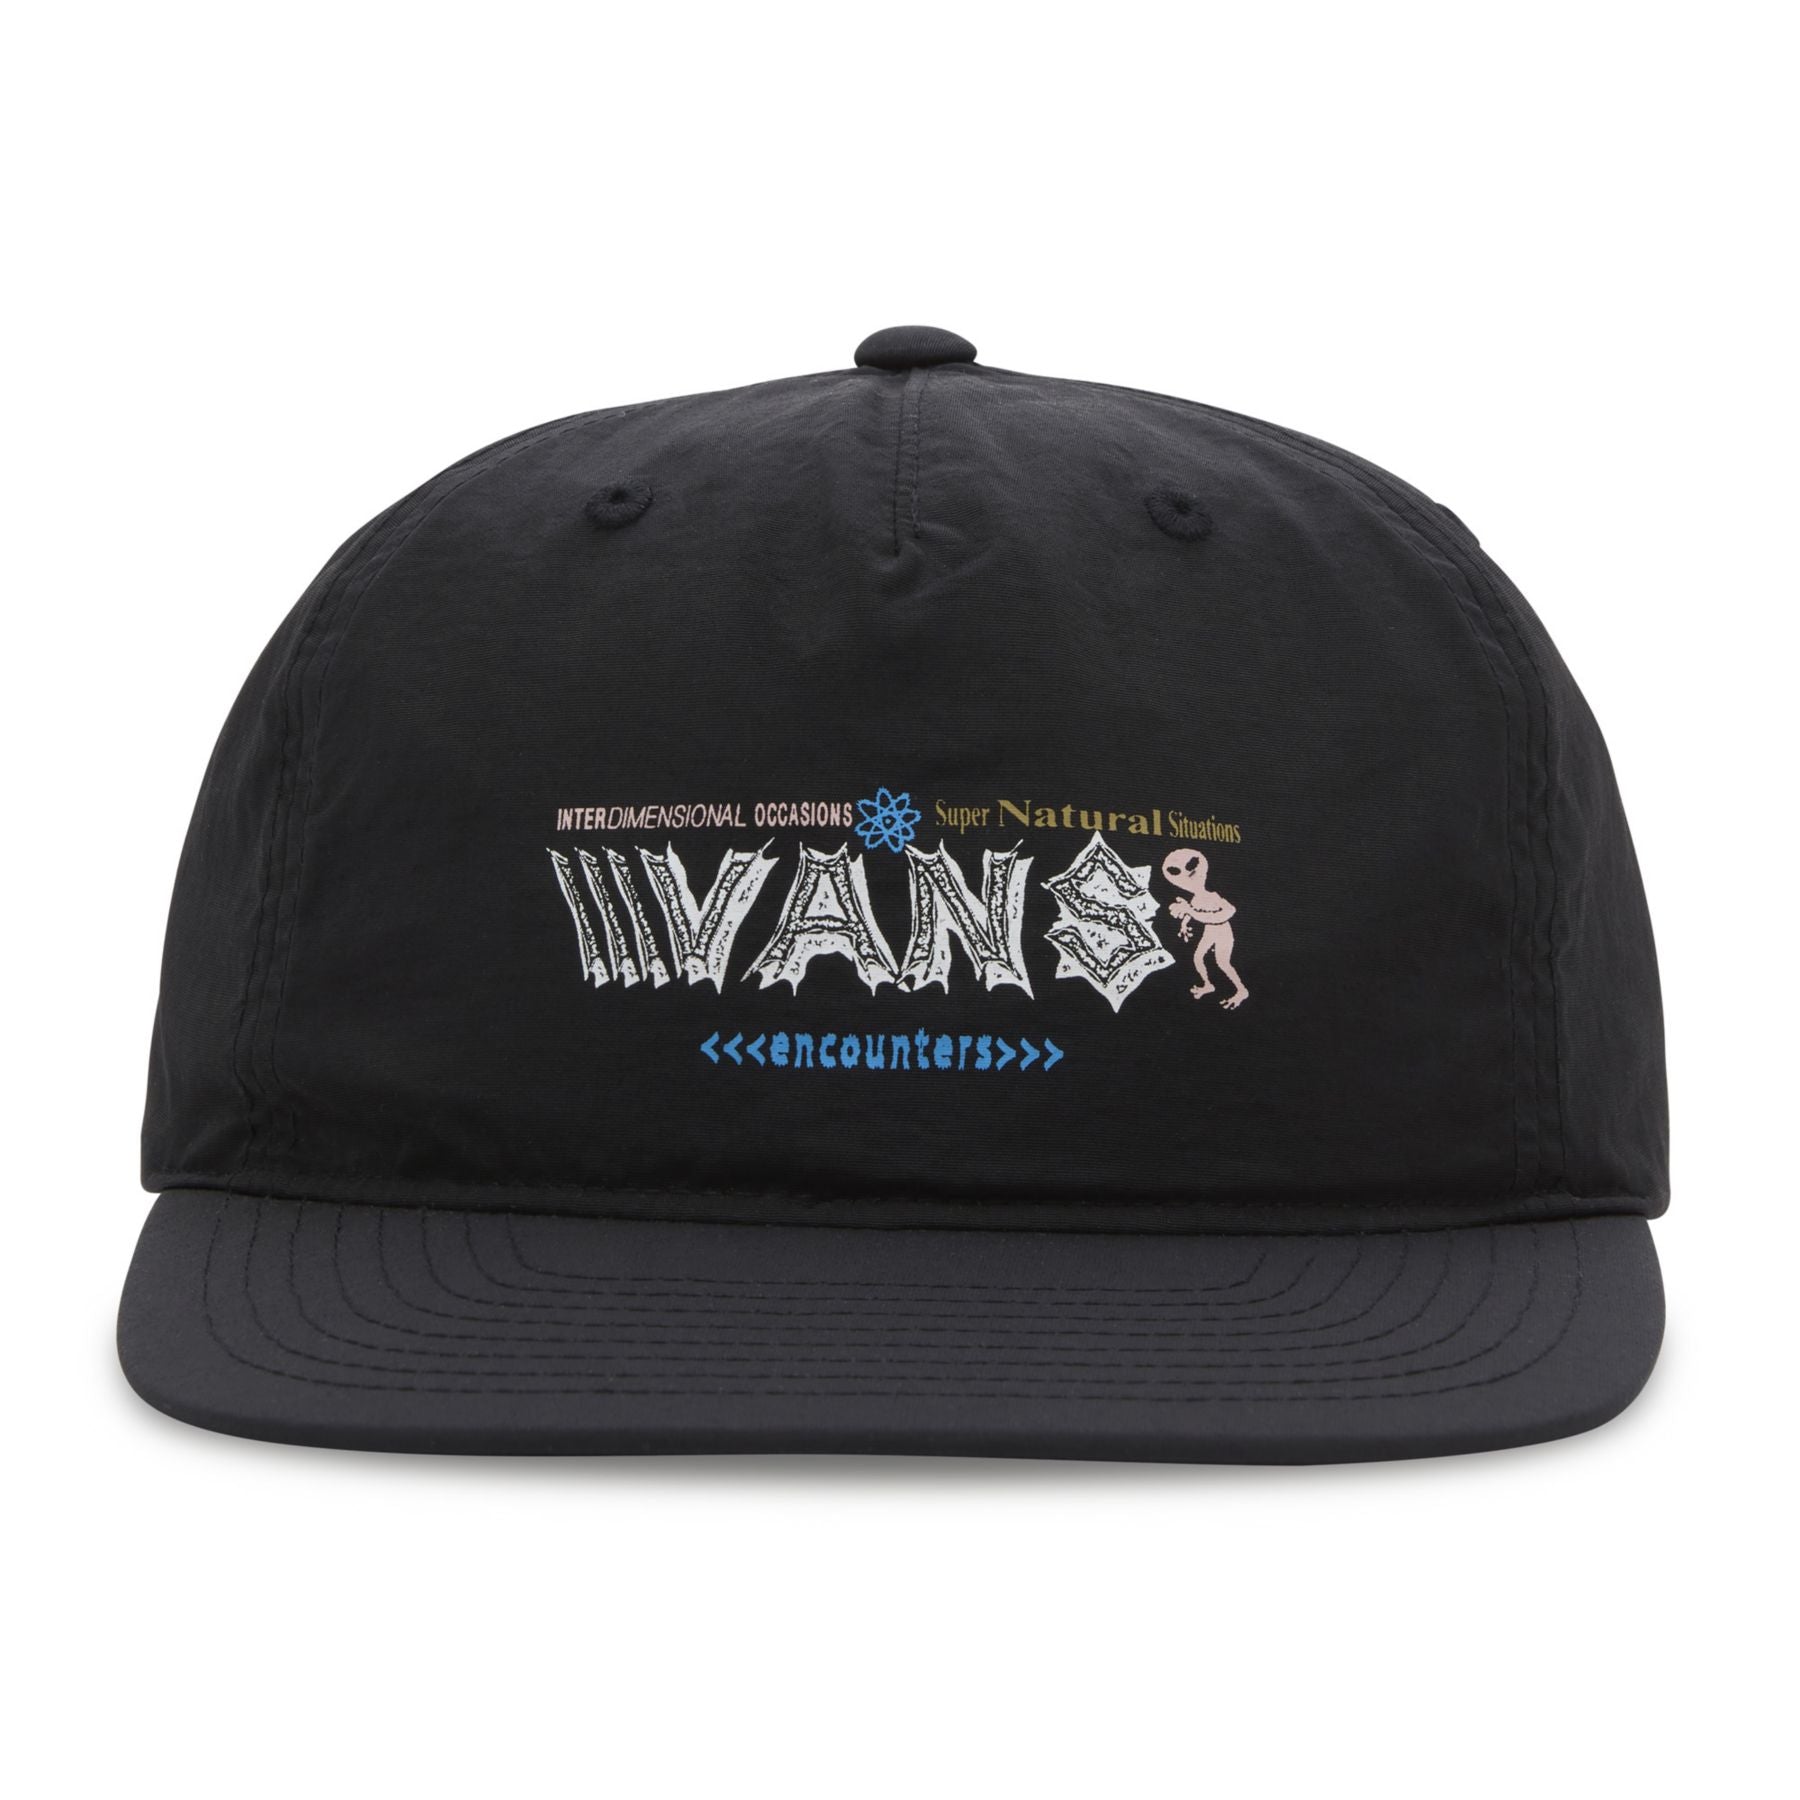 Encounters Vans Snapback Hat